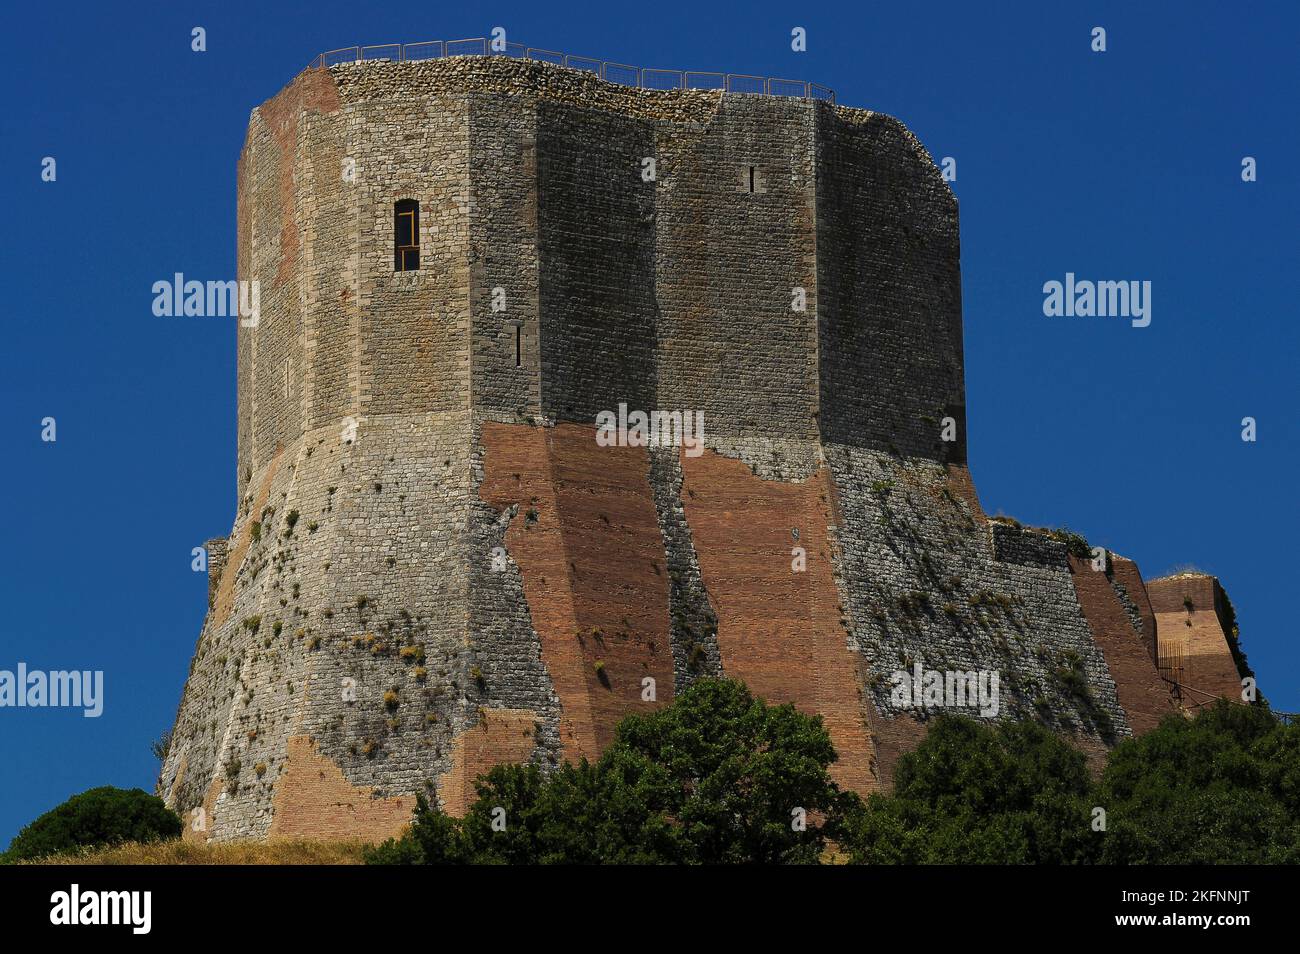 Beeindruckende Festung aus dem Jahr 1200s, die Rocca di Tentennano, in Rocca d'Orcia, von Castiglione d'Orcia, Toskana, Italien. Die Festung hat sich zweimal ergeben, nachdem verräterische Wachen dem Feind ihre Tore öffneten, aber sie wurde nie gewaltsam eingenommen. Ziegel wurden verwendet, um die zerfallenen Kalksteinwände zu reparieren. Stockfoto